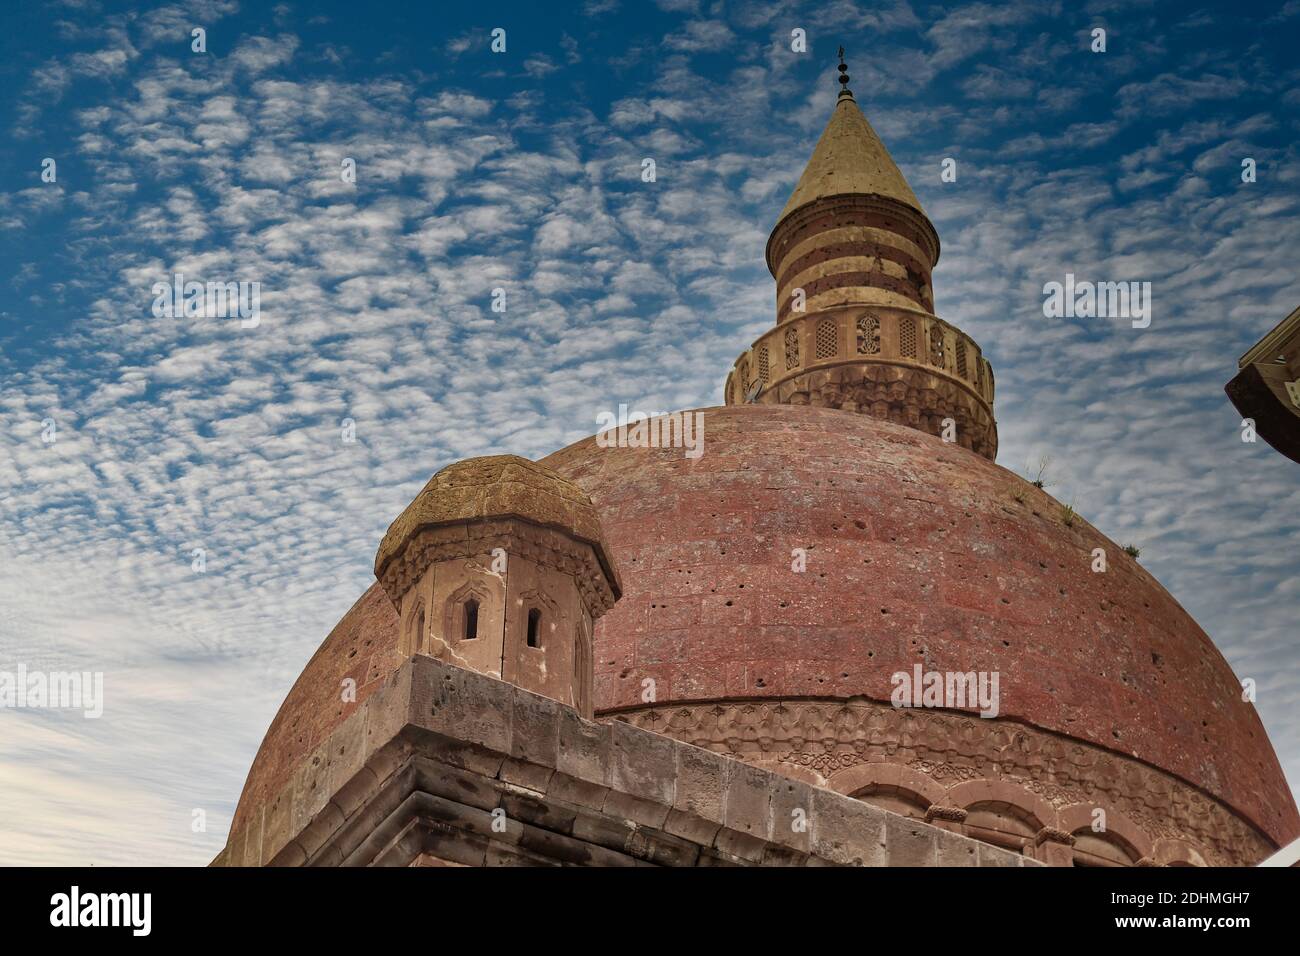 Agri, Turquie - Mai 2018: Le minaret du Palais Ishak Pasha près de Dogubayazit dans l'est de la Turquie. Belle mosquée brune au Moyen-Orient. Différent v Banque D'Images